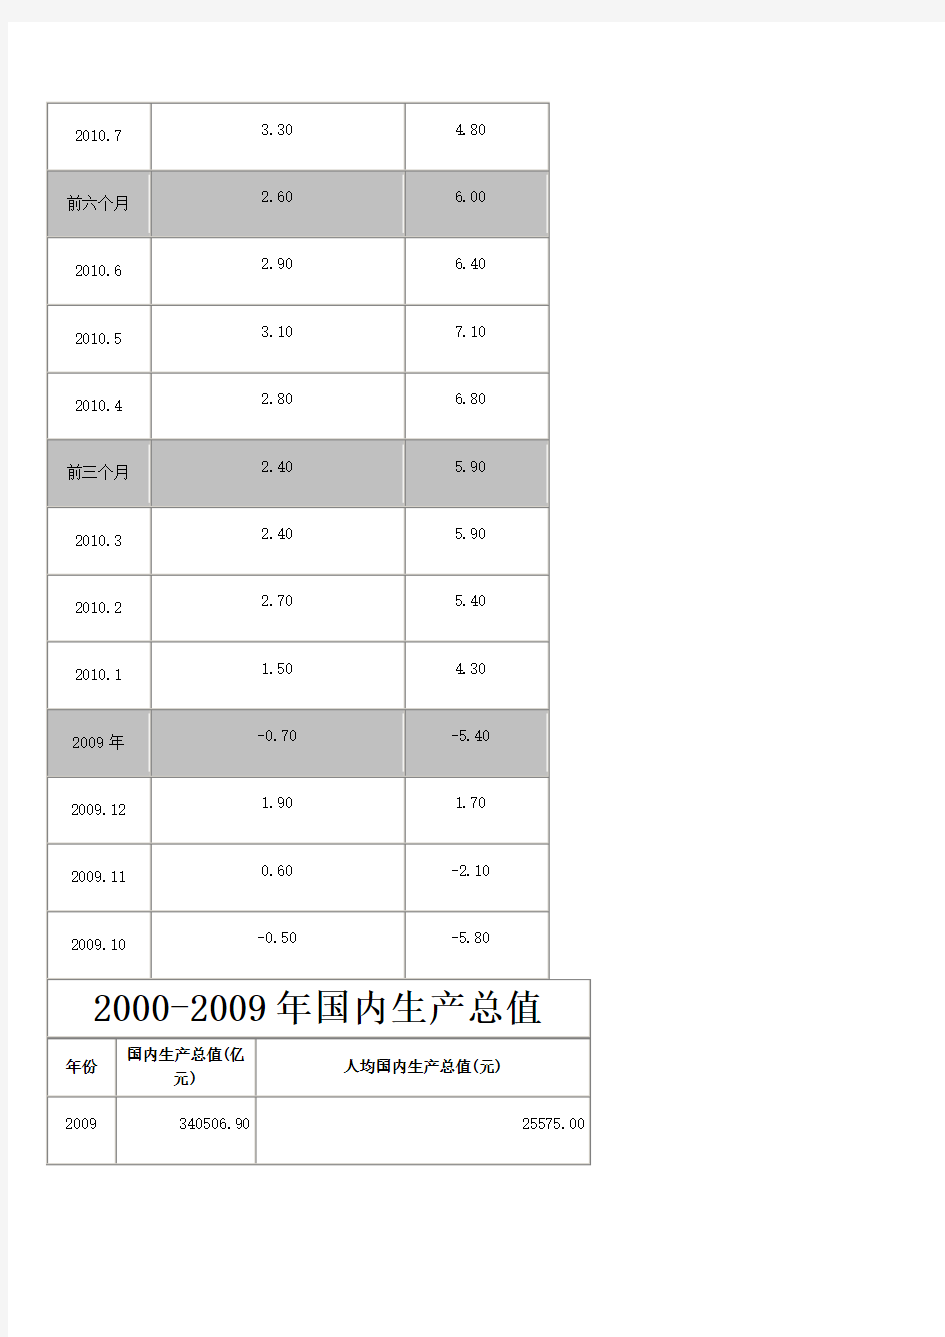 中国统计局1980年至2010年经济数据指标